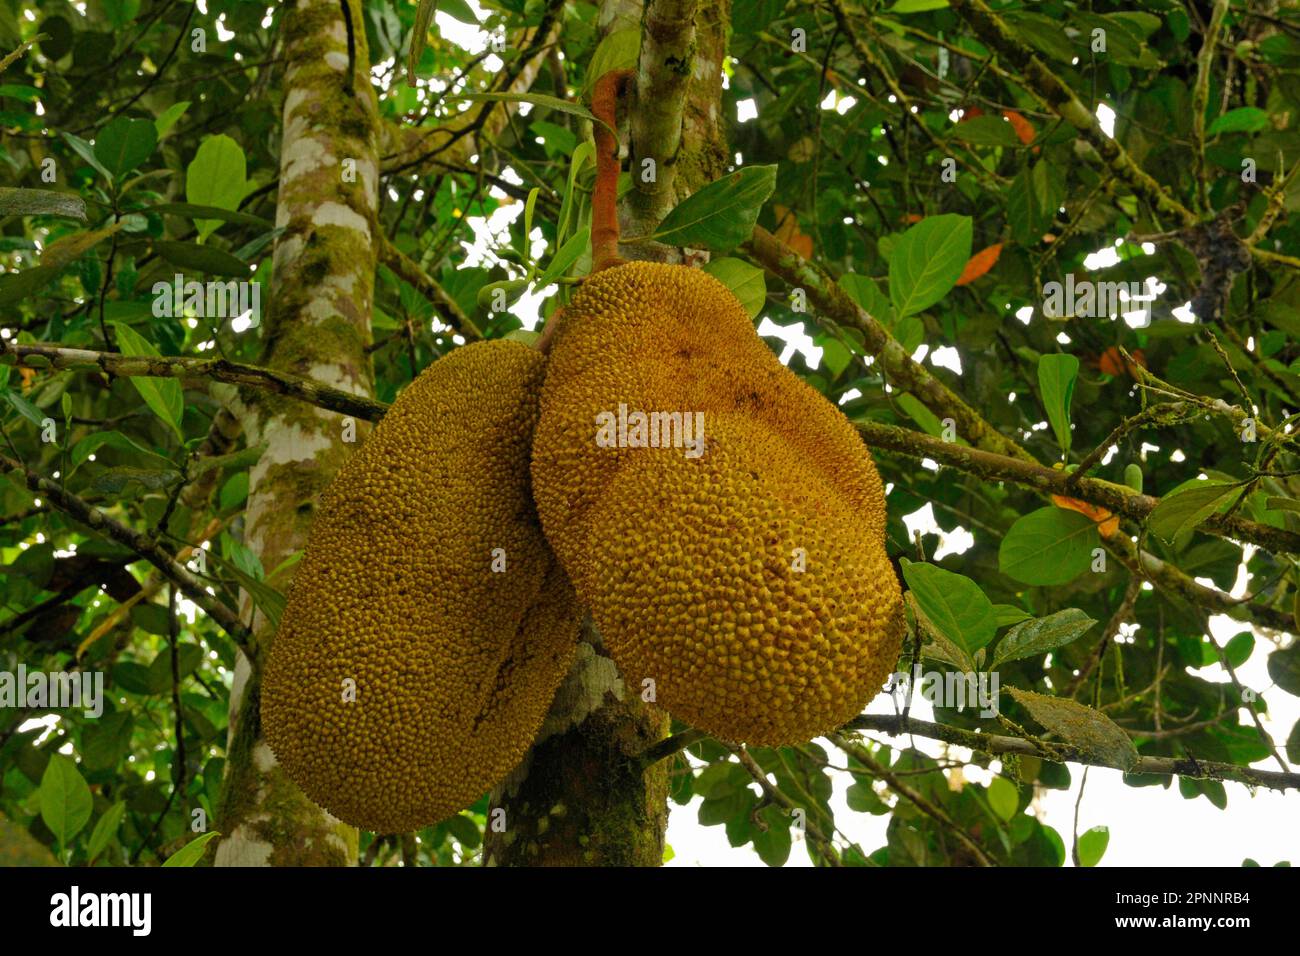 Jackfruit tree Stock Photo